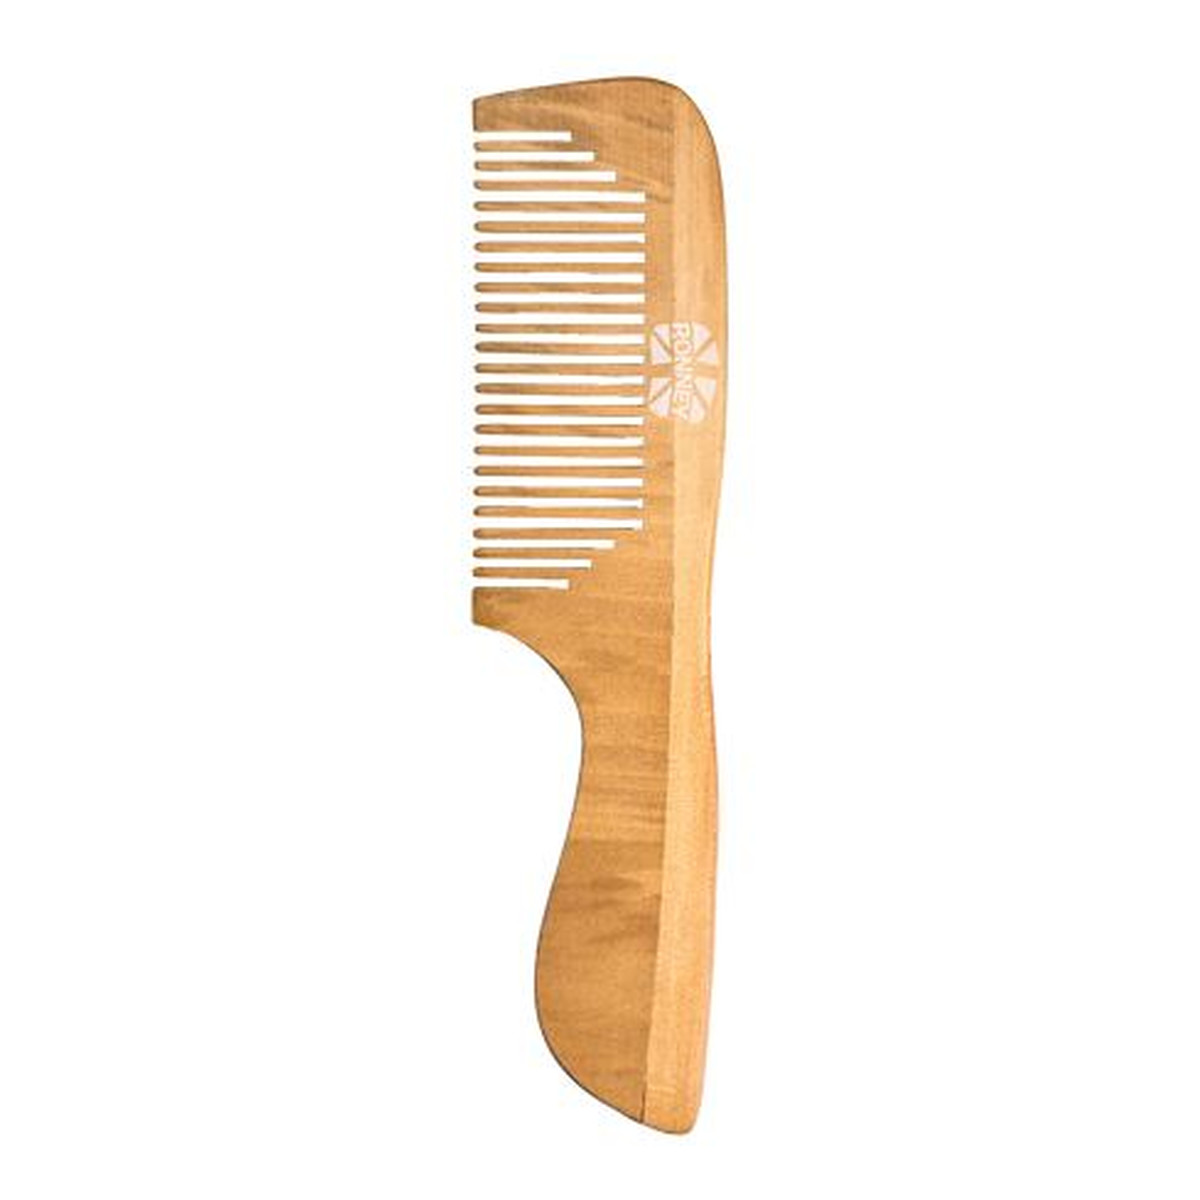 Ronney Professional wooden comb profesjonalny drewniany grzebień do włosów 184x45mm ra 00122